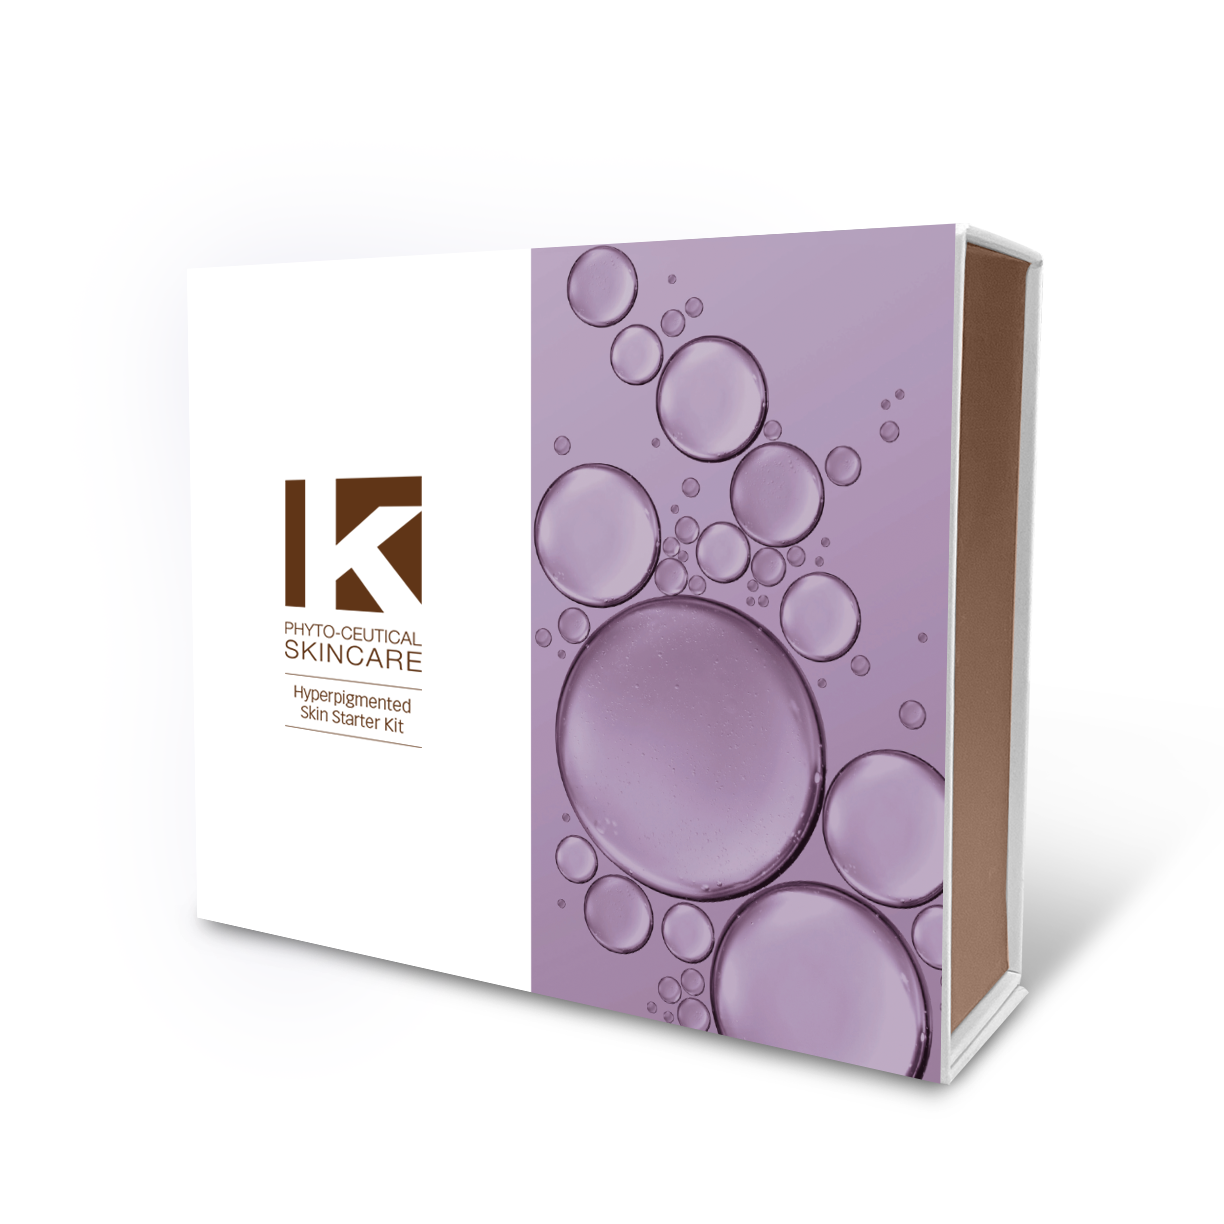 K Phyto-Ceutical Skincare - Hyperpigmented Skin Kit